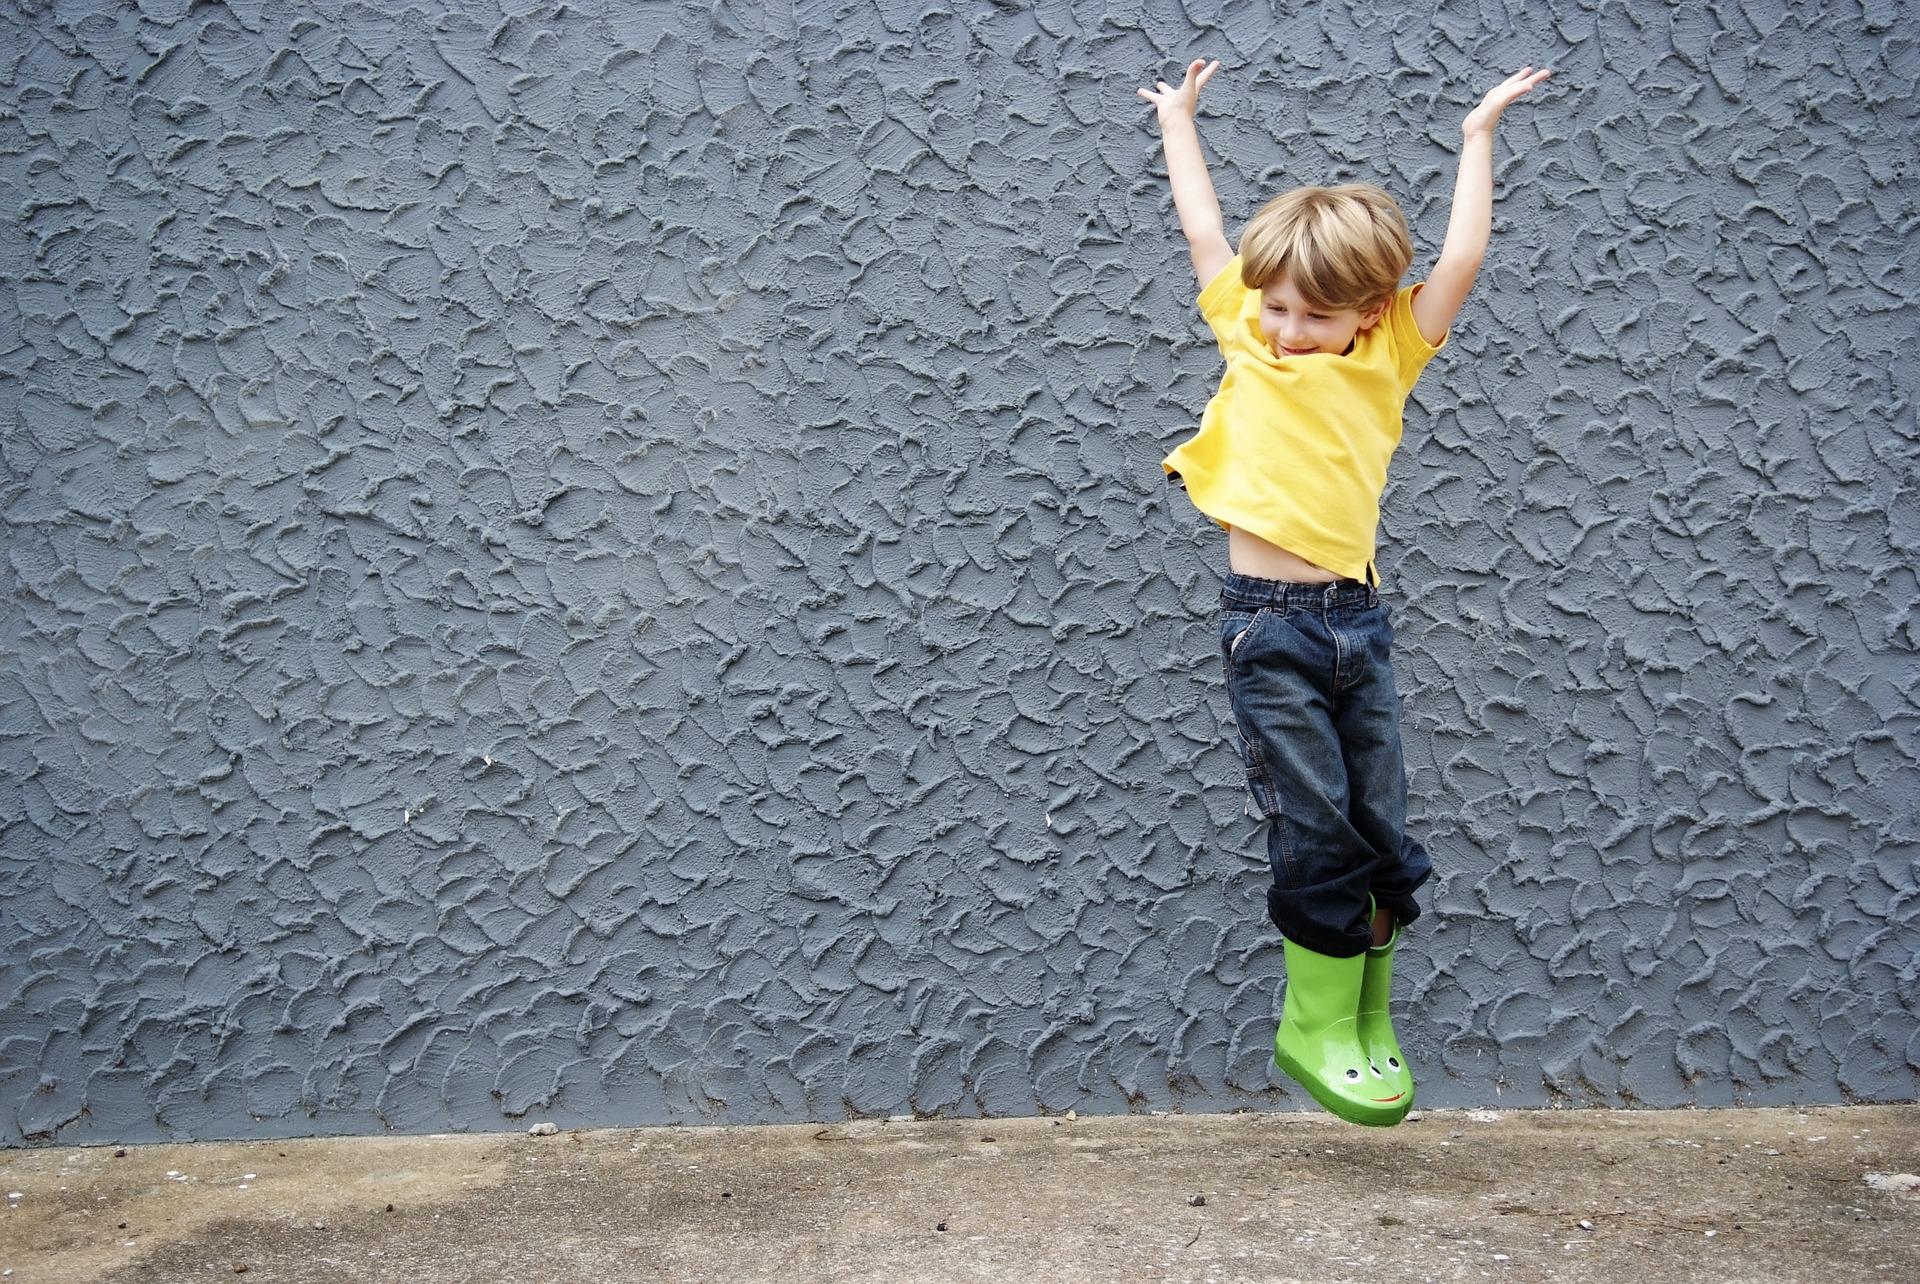 Figura 3. Niño saltando. Fuente: Pixabay (banco libre de imágenes)